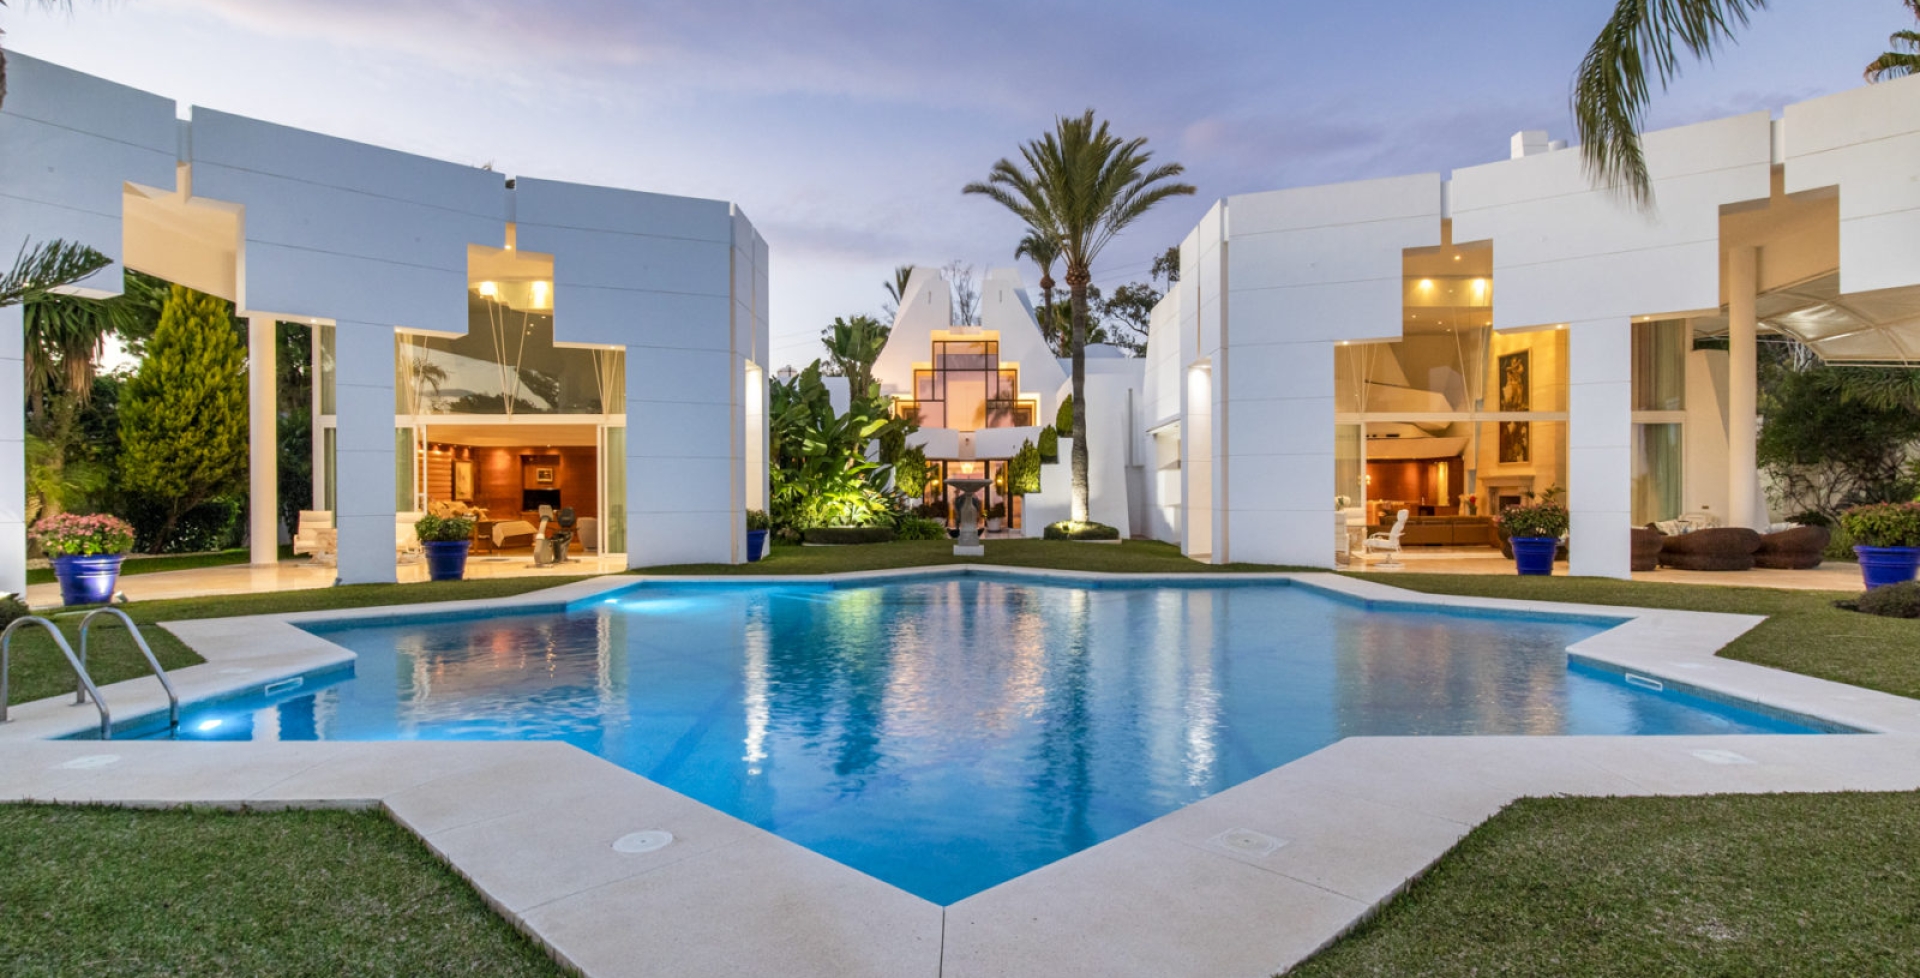 Villa Star Marbella 7 bedrooms spectacular pool